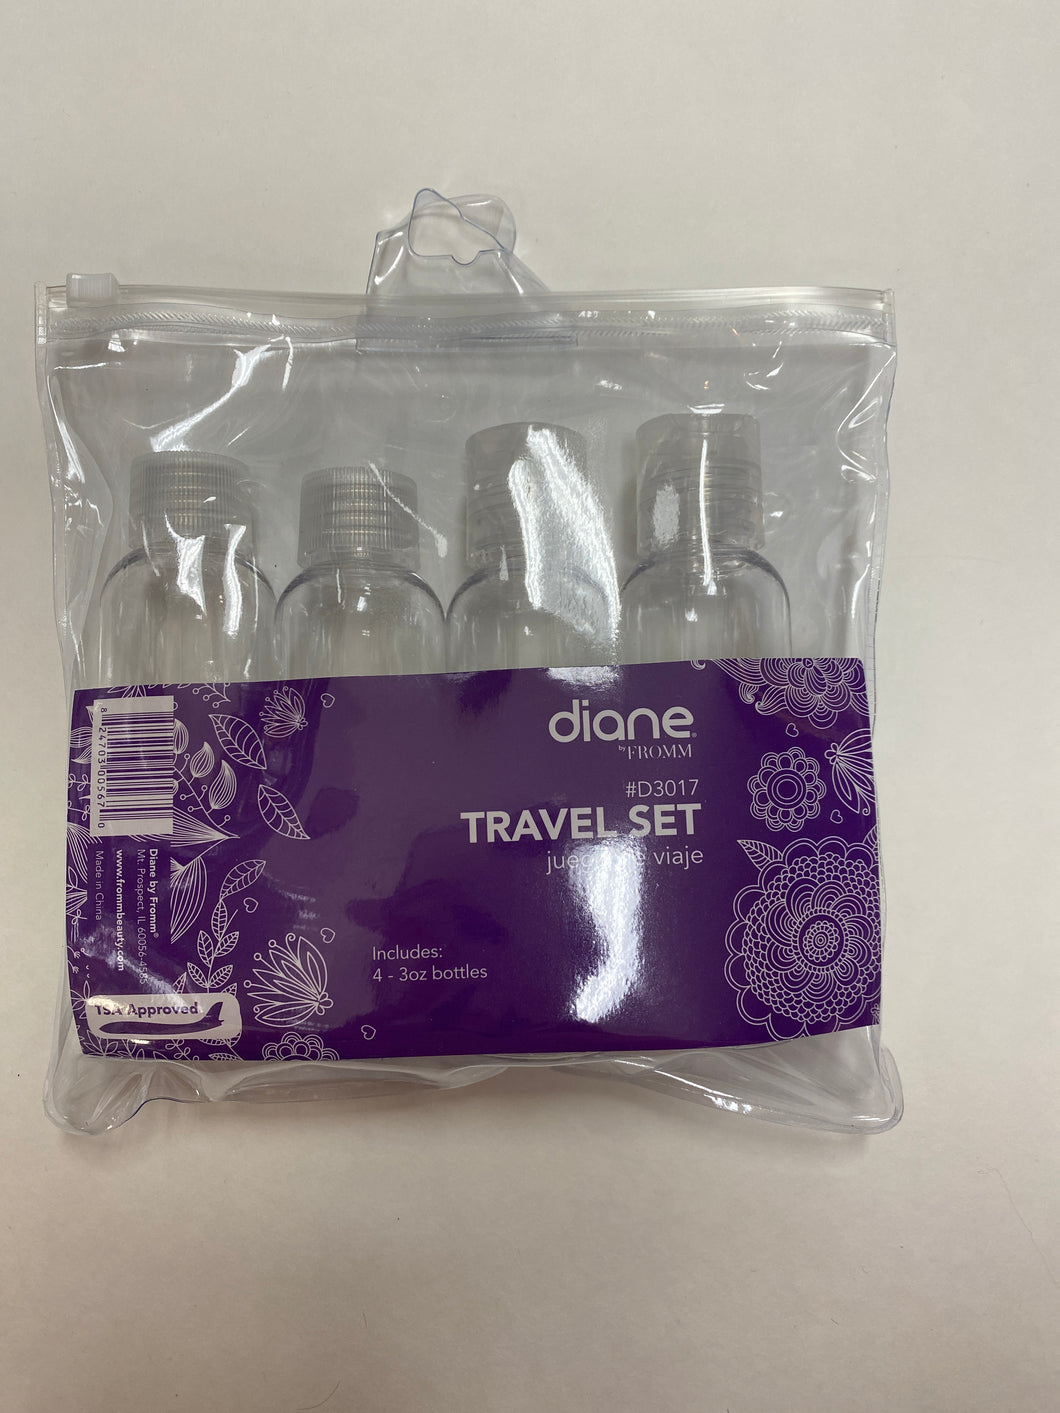 Diane Travel Set Bottles